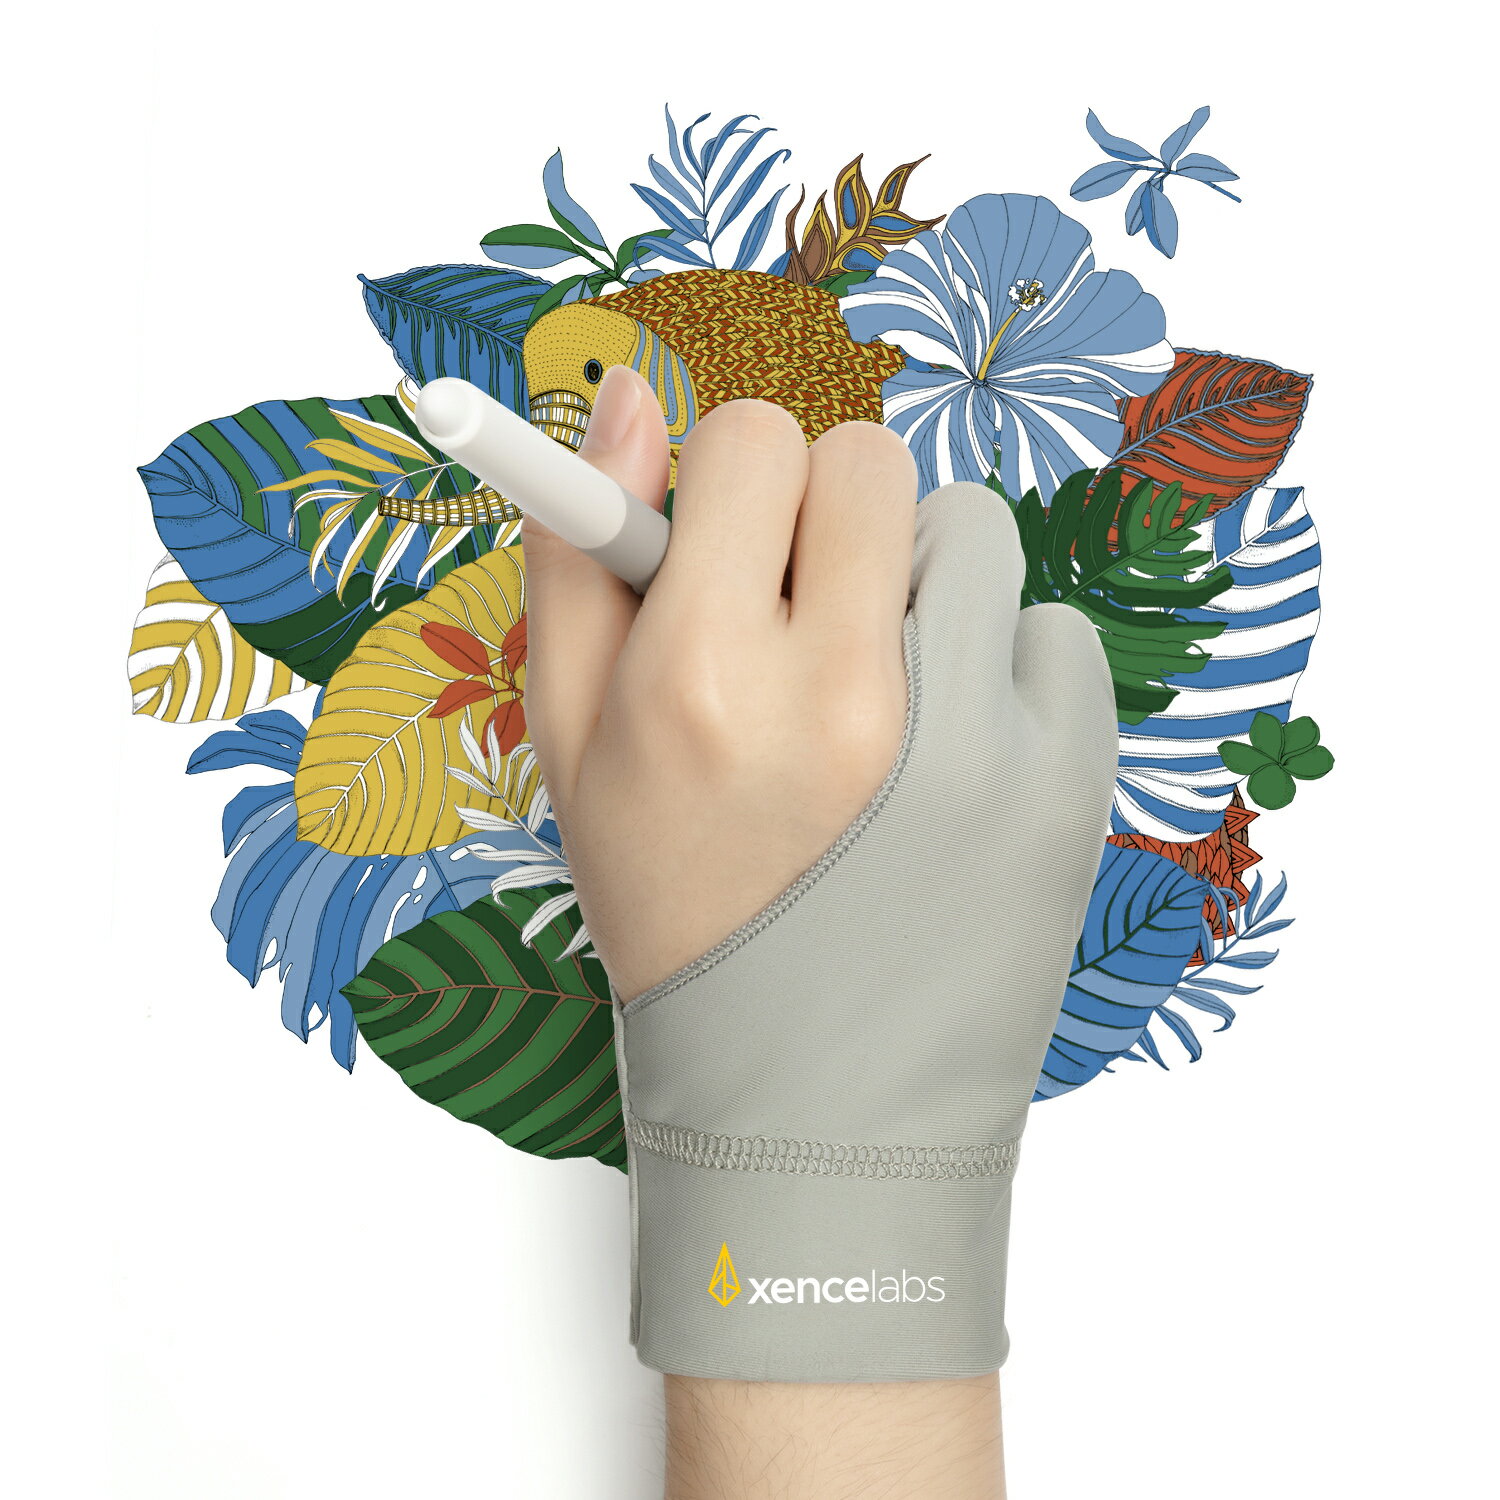 Xencelabs センスラボ 二本指グローブ 2本指手袋 ドローイング タブレット用 お絵描き手袋 肌の擦れを..